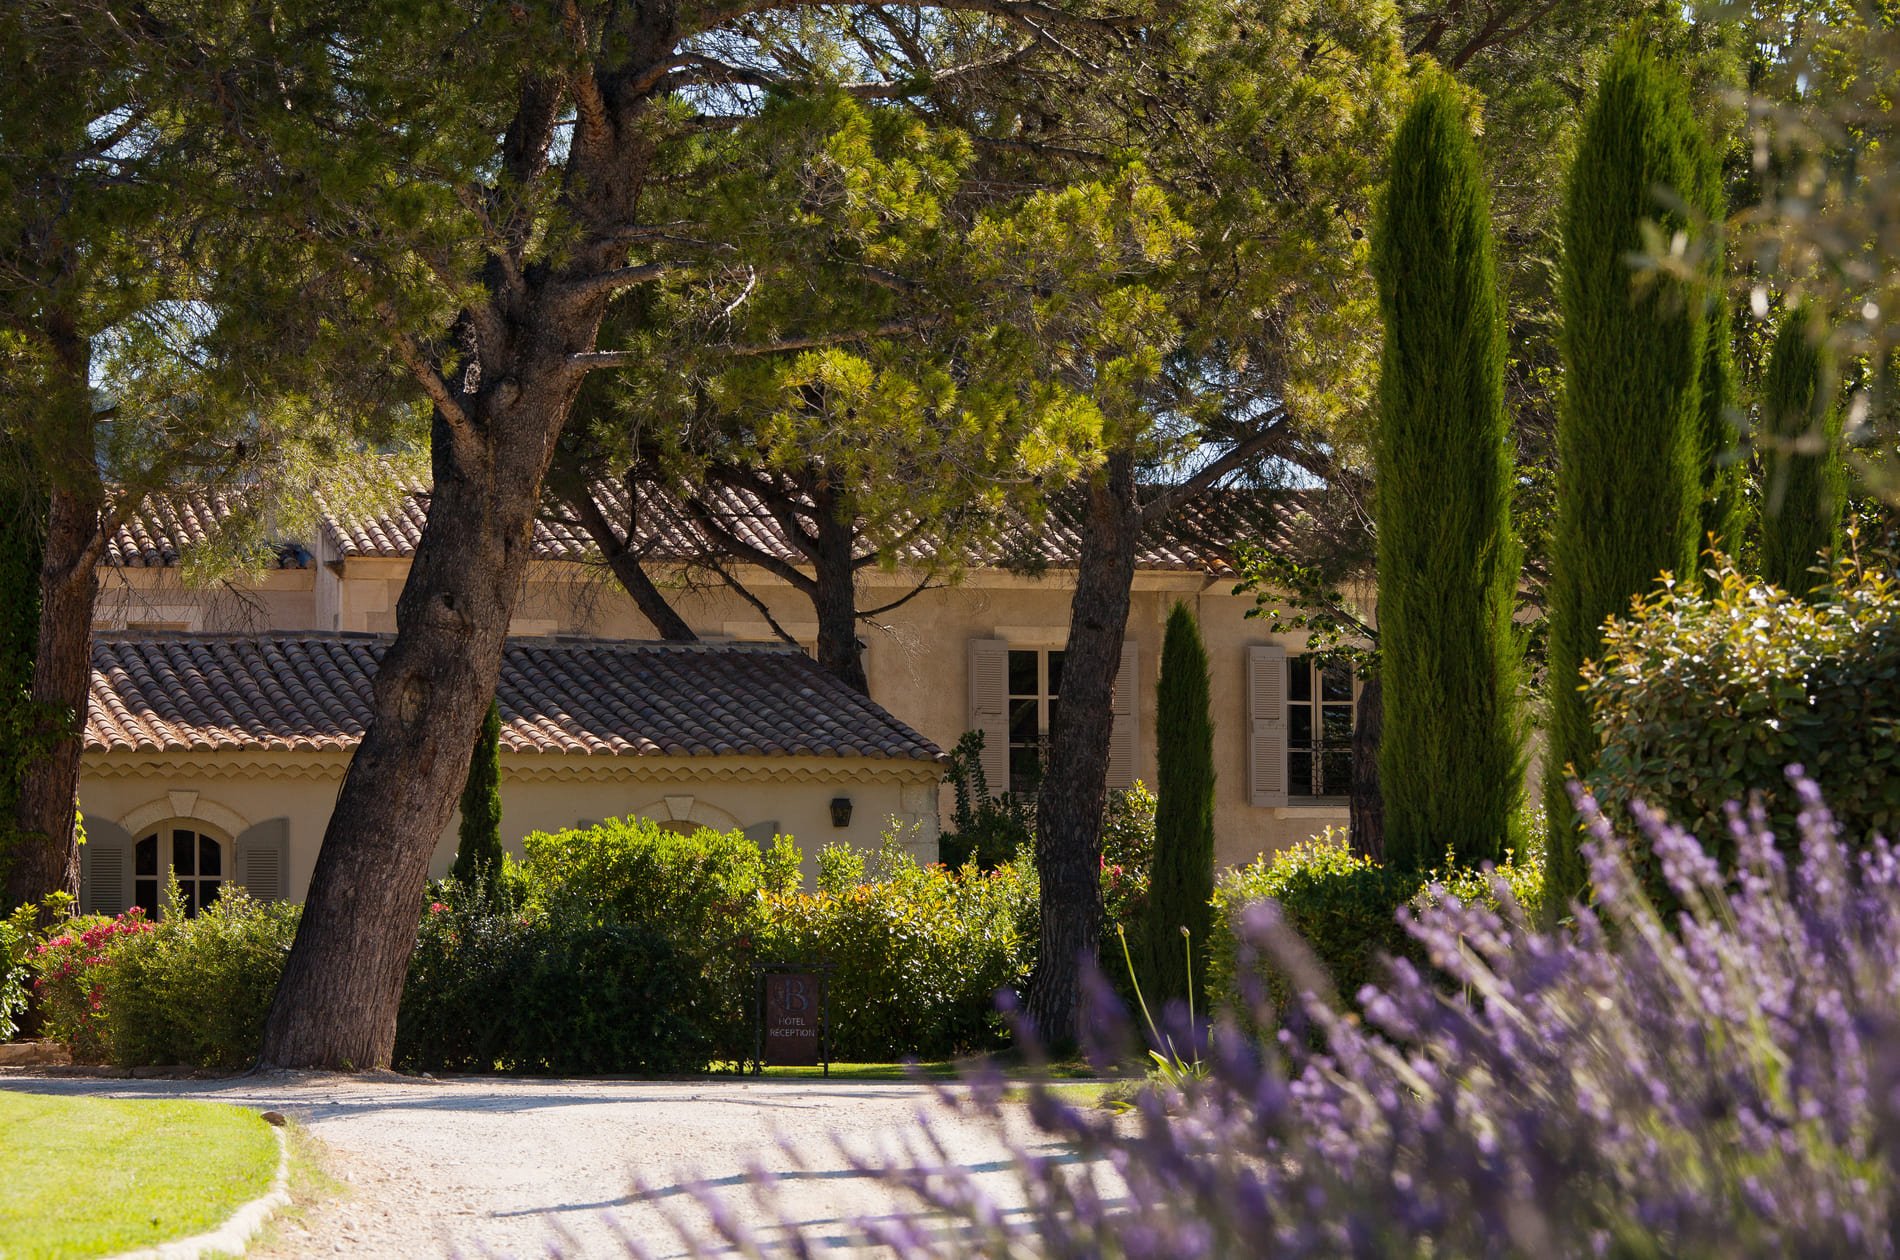 Luxury boutique hotel Benvengudo 4 stars Les Baux-de-Provence France garden lavender